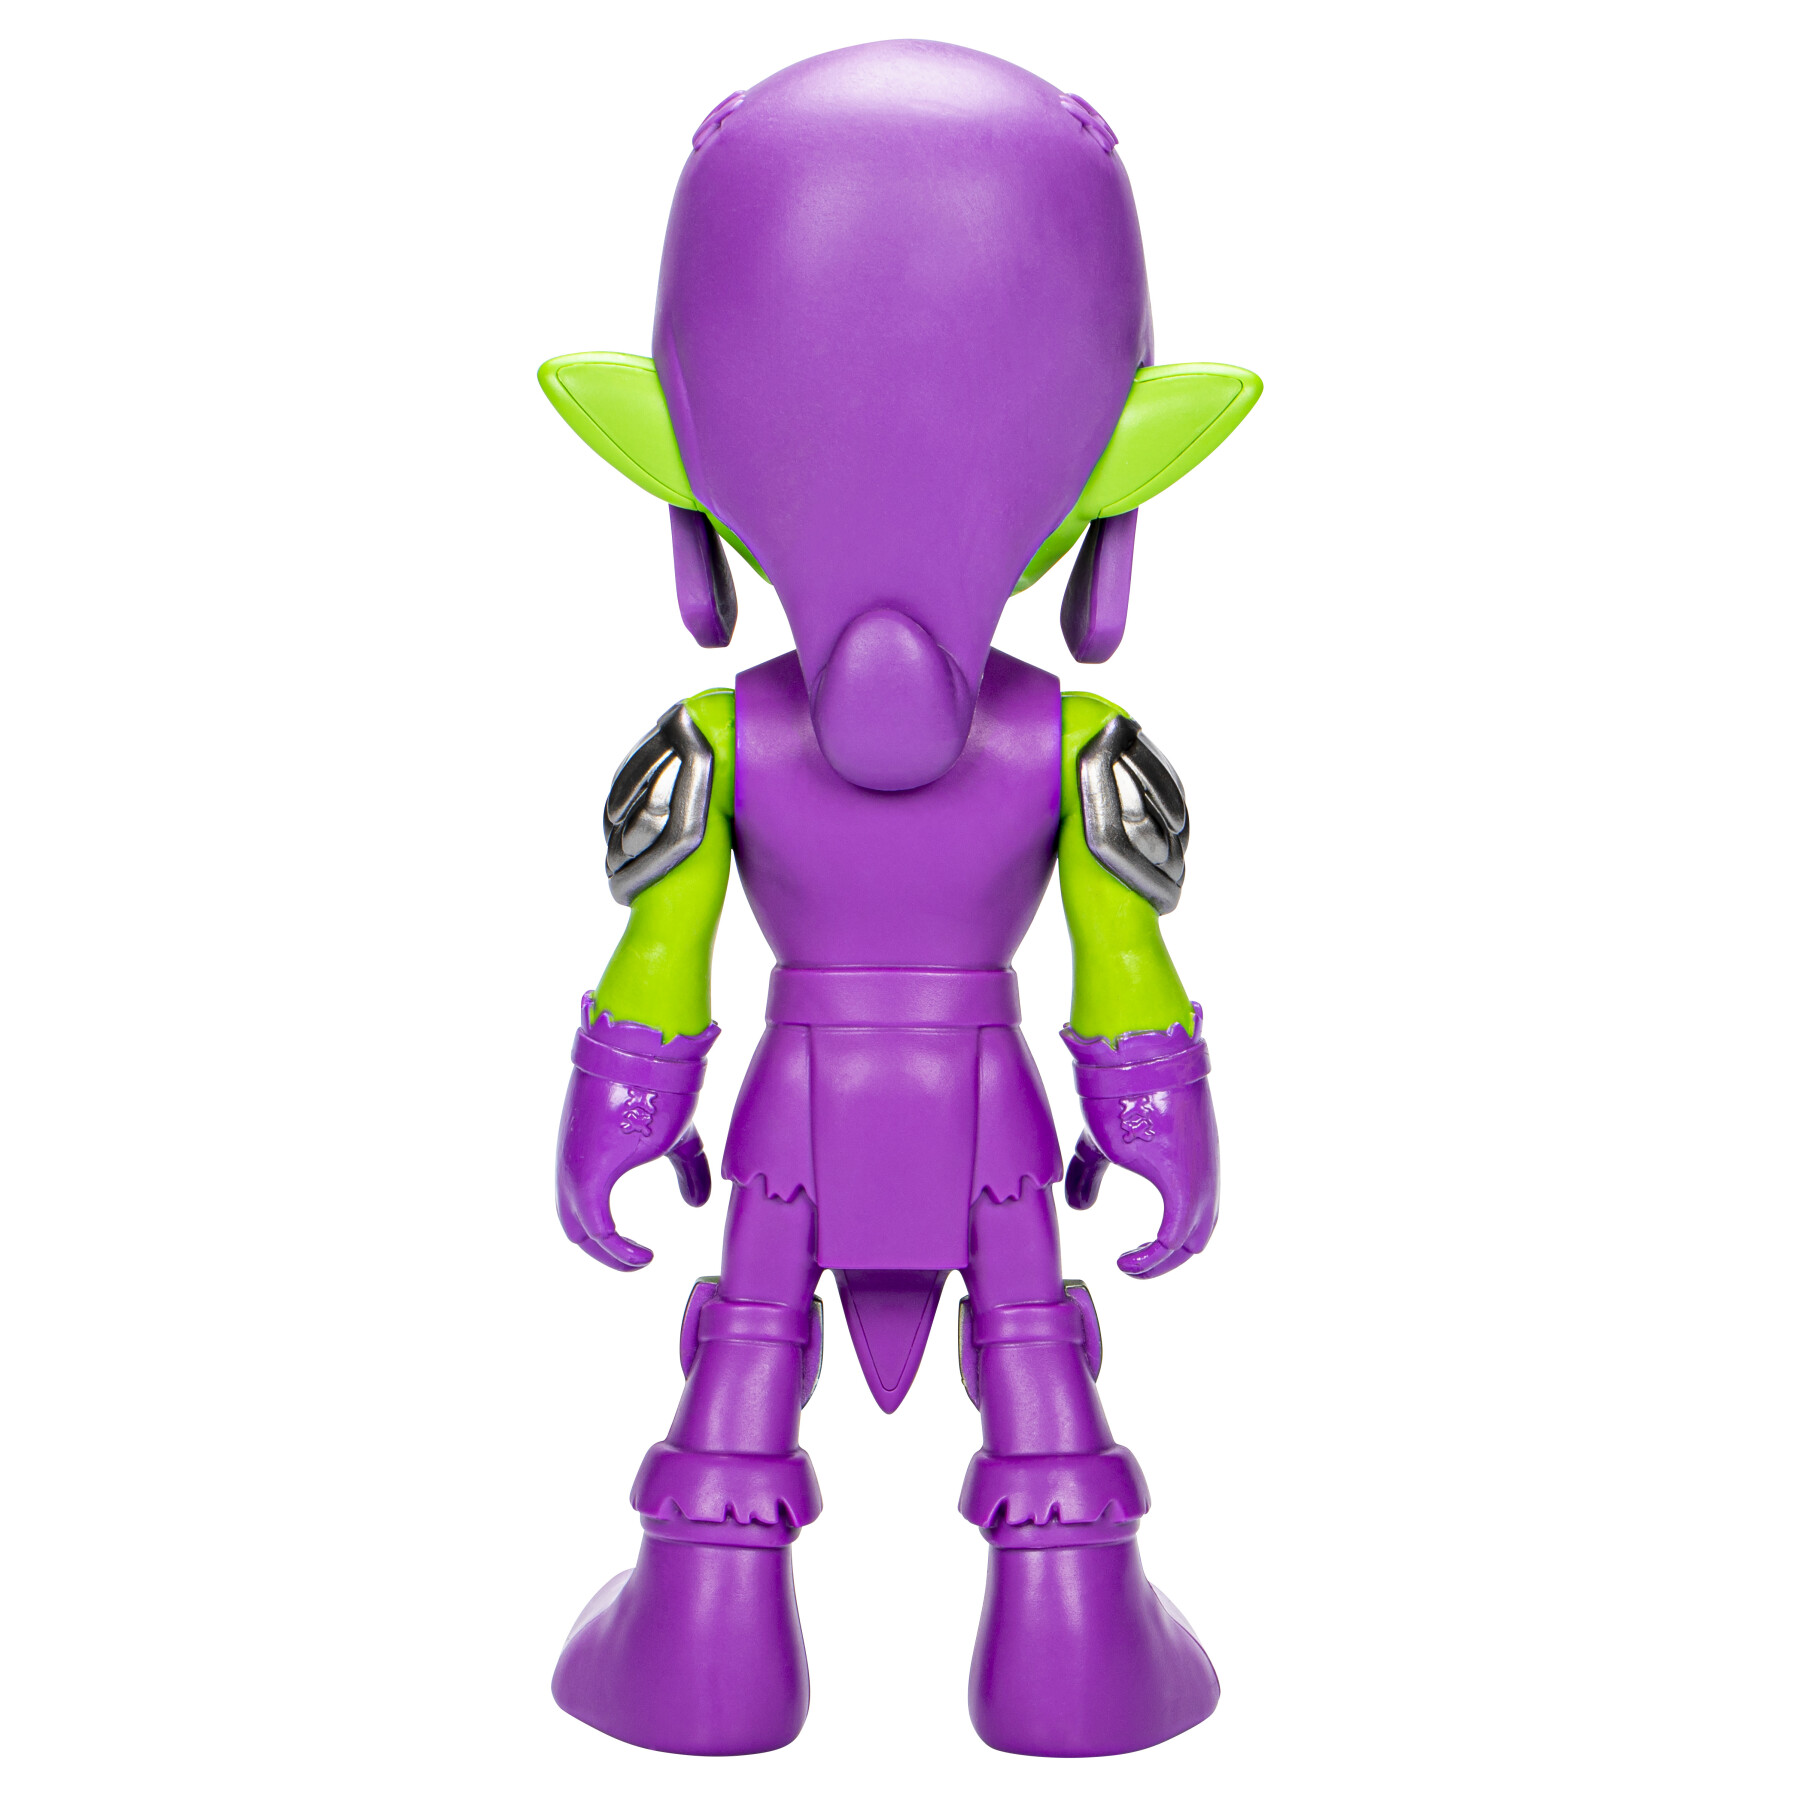 Hasbro marvel spidey e i suoi fantastici amici, action figure di green goblin di grandi dimensioni, giocattoli per età prescolare - SPIDEY, MARVEL